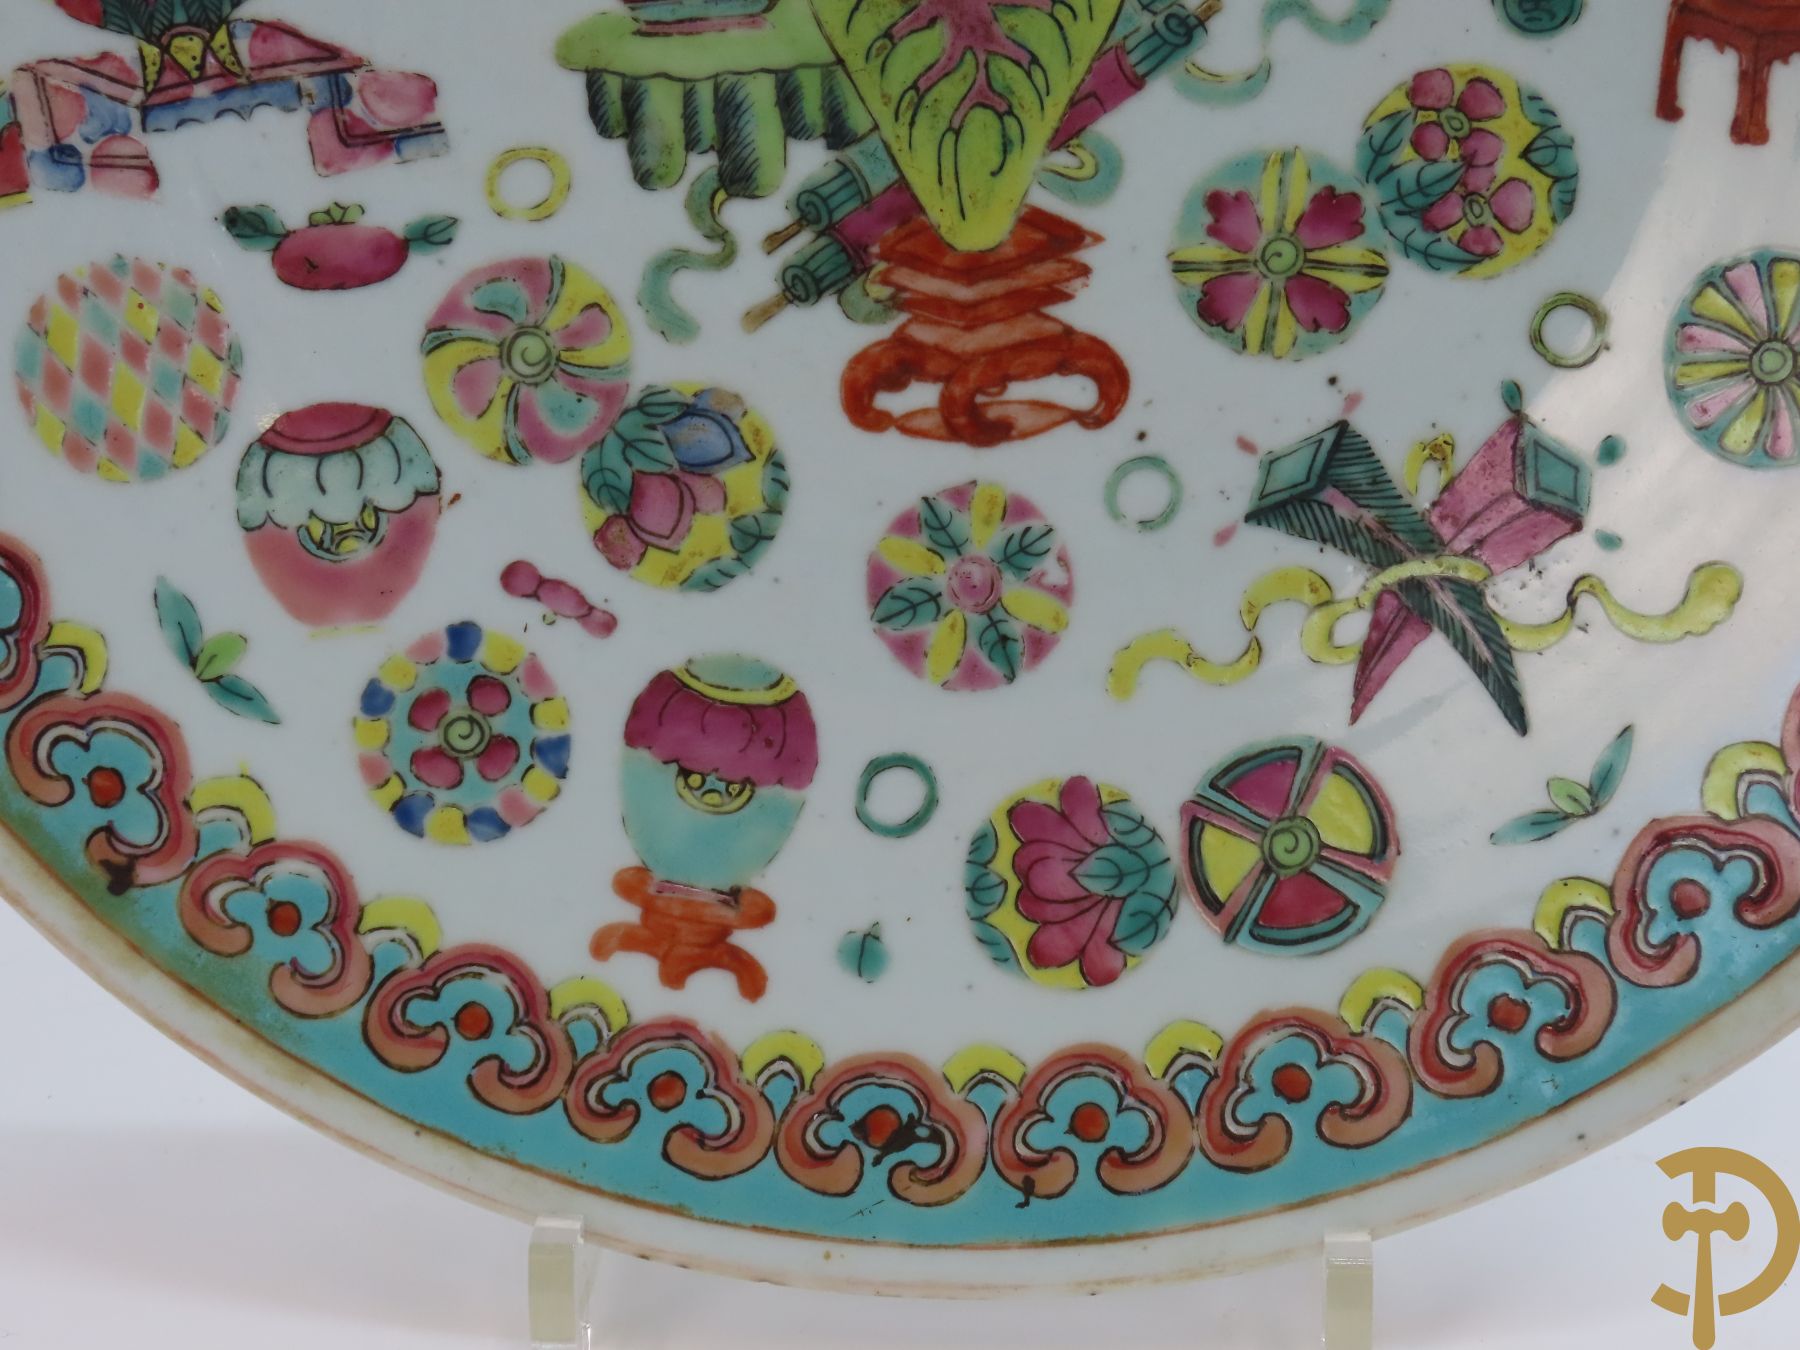 Chinese porseleinen grote schotel met antiquiteitendecor + dekselpotiche met decor van bloemen en Chinese tekens